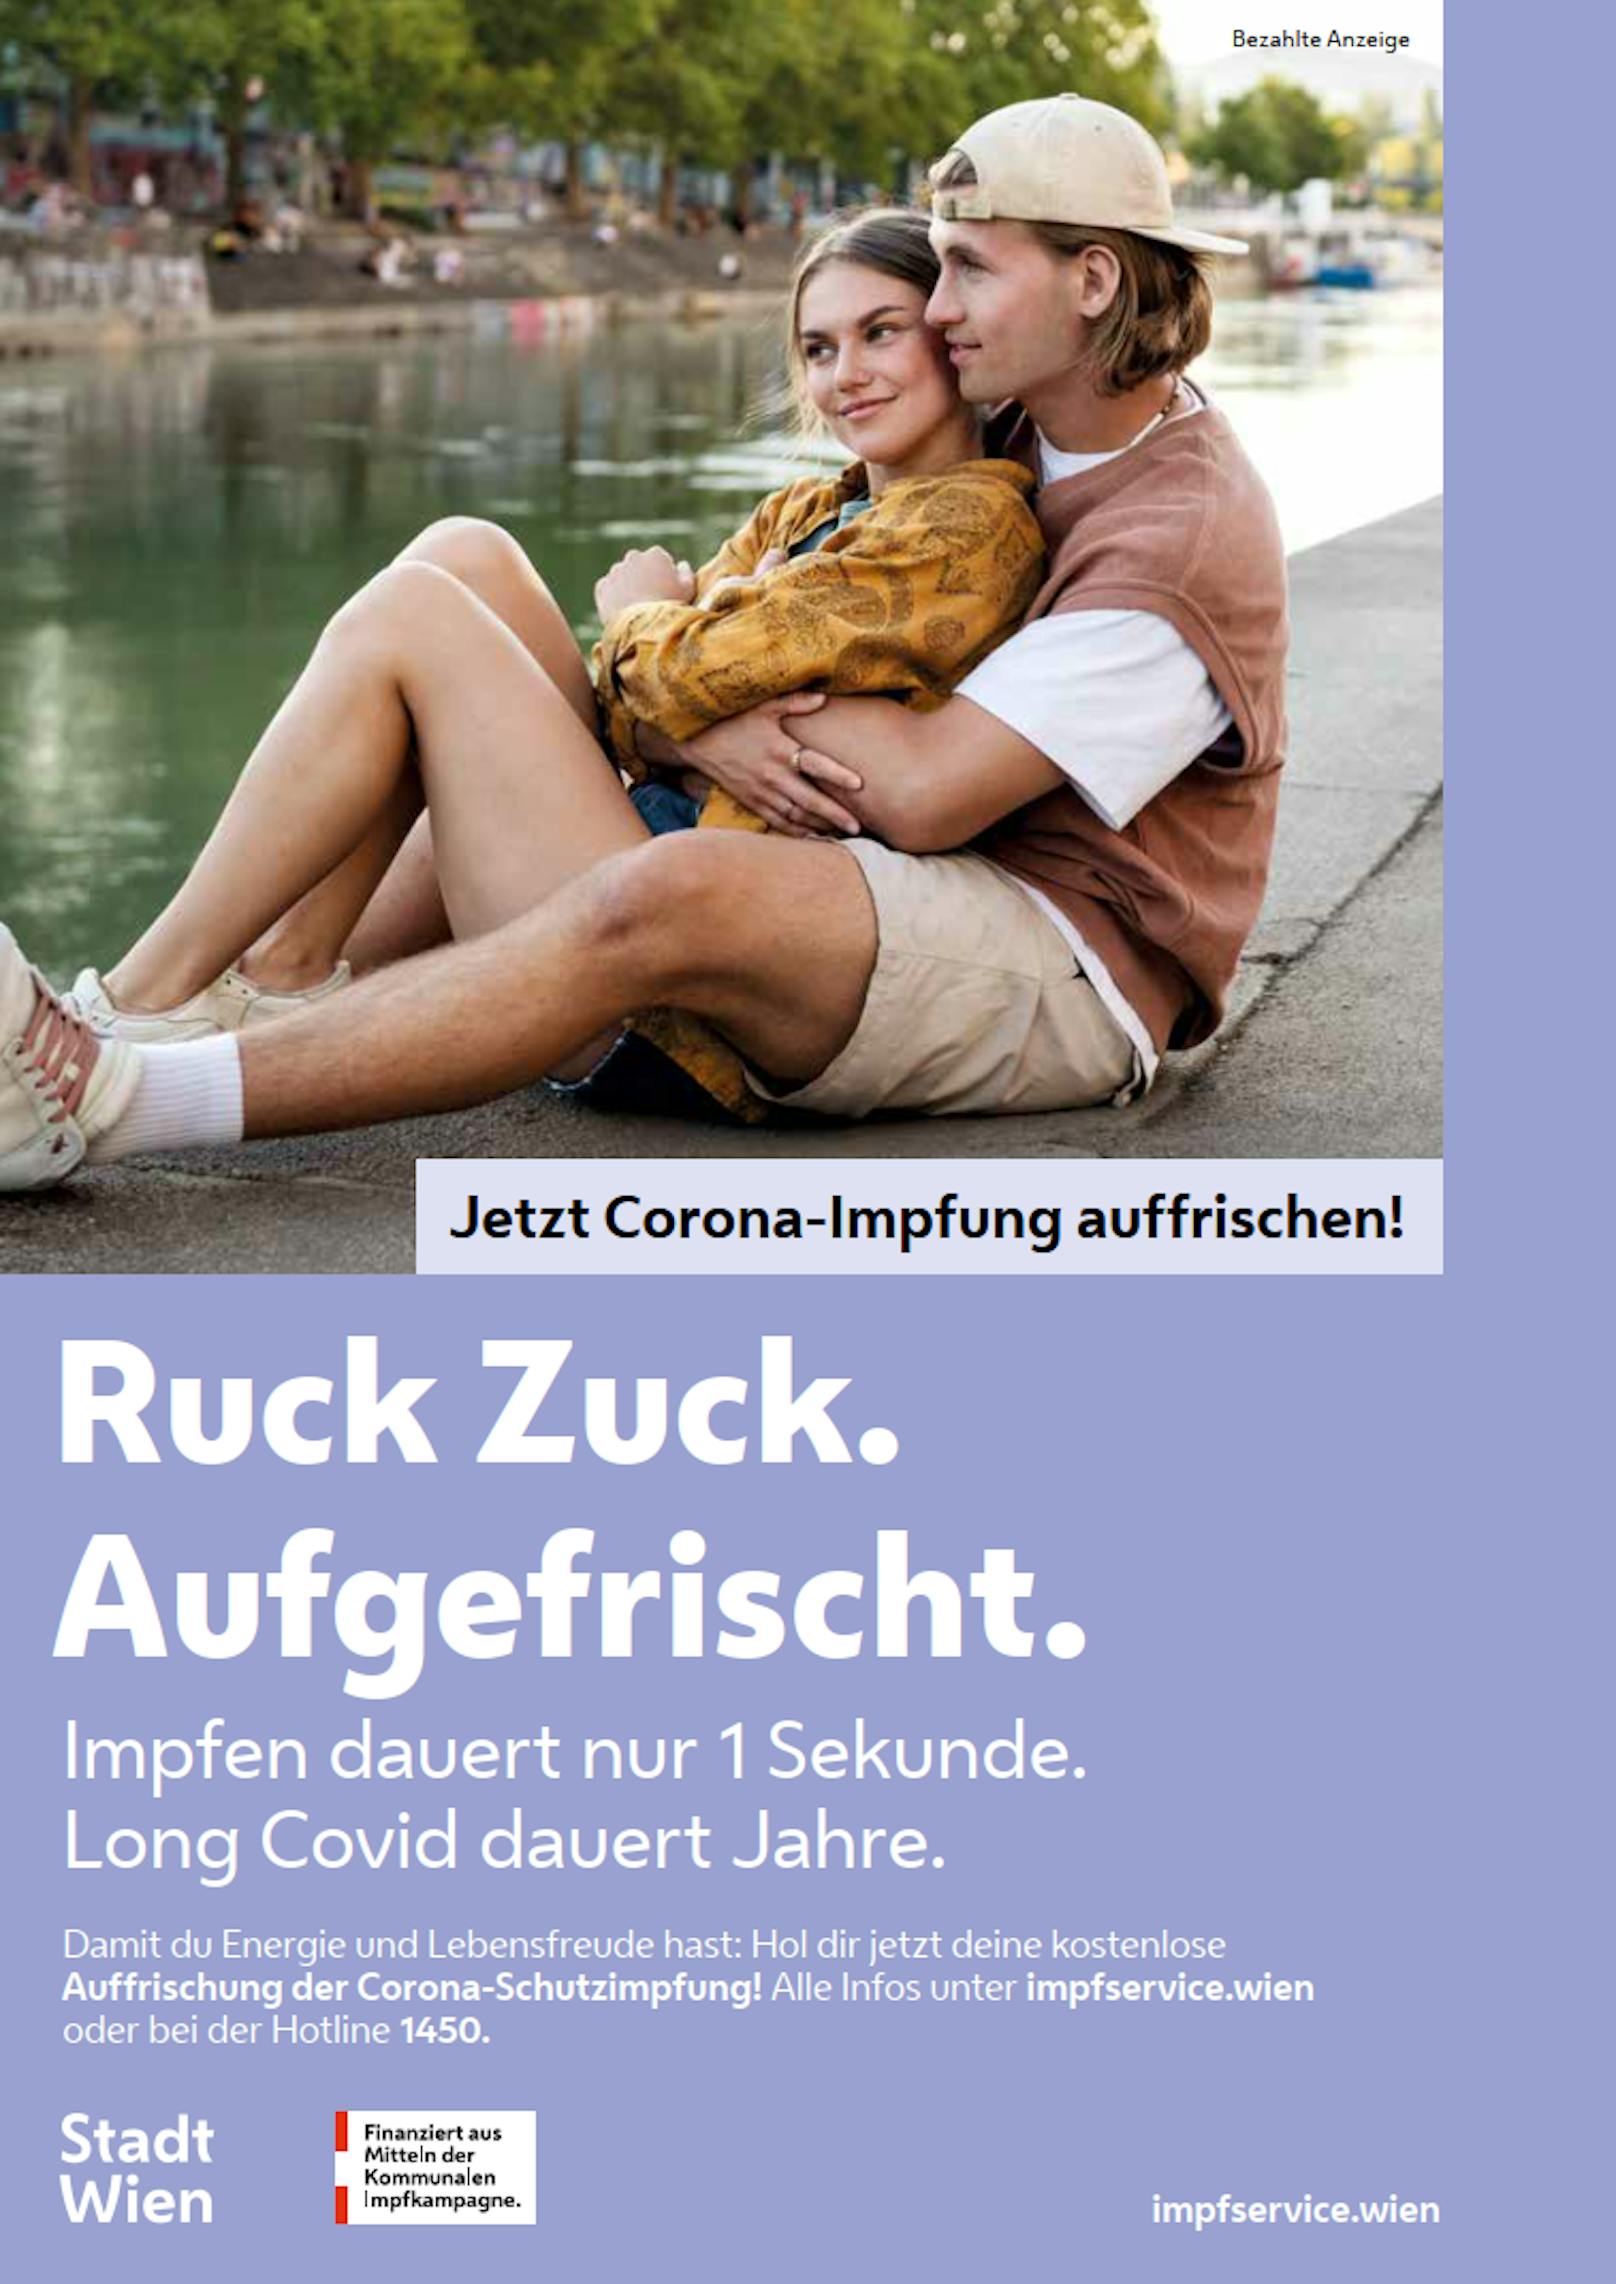 Mit der Kampagne "Ruck Zuck. Aufgefrischt." möchte die Stadt Wien impfbereite Wiener motivieren, sich den vierten Stich zu holen.